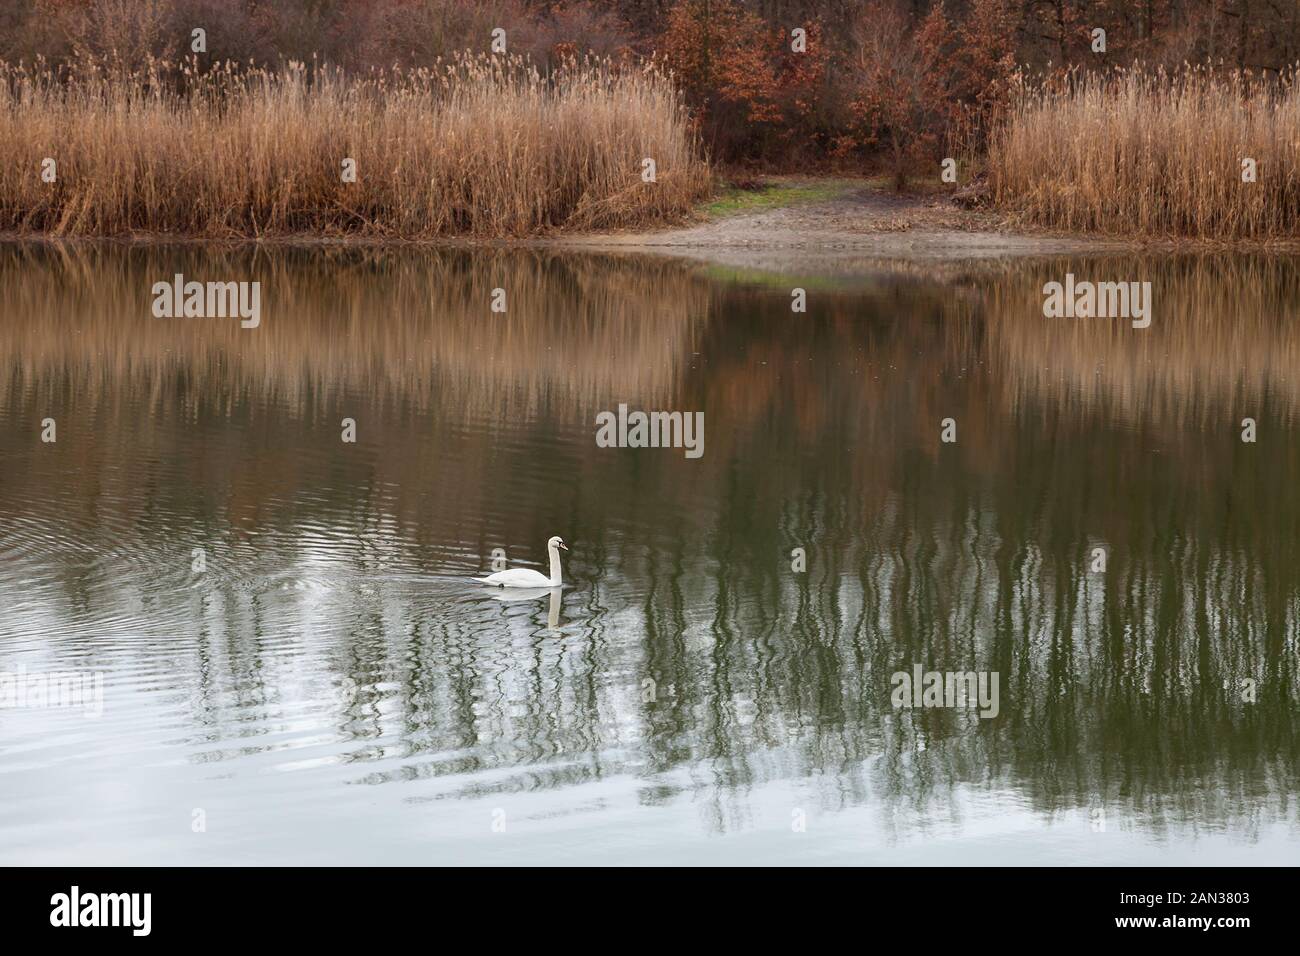 Bella cigno bianco con marcature nere sulla testa che nuotano attraverso un lago di Kragujevac facendo increspature in acqua e riflessi di lamelle morbide Foto Stock